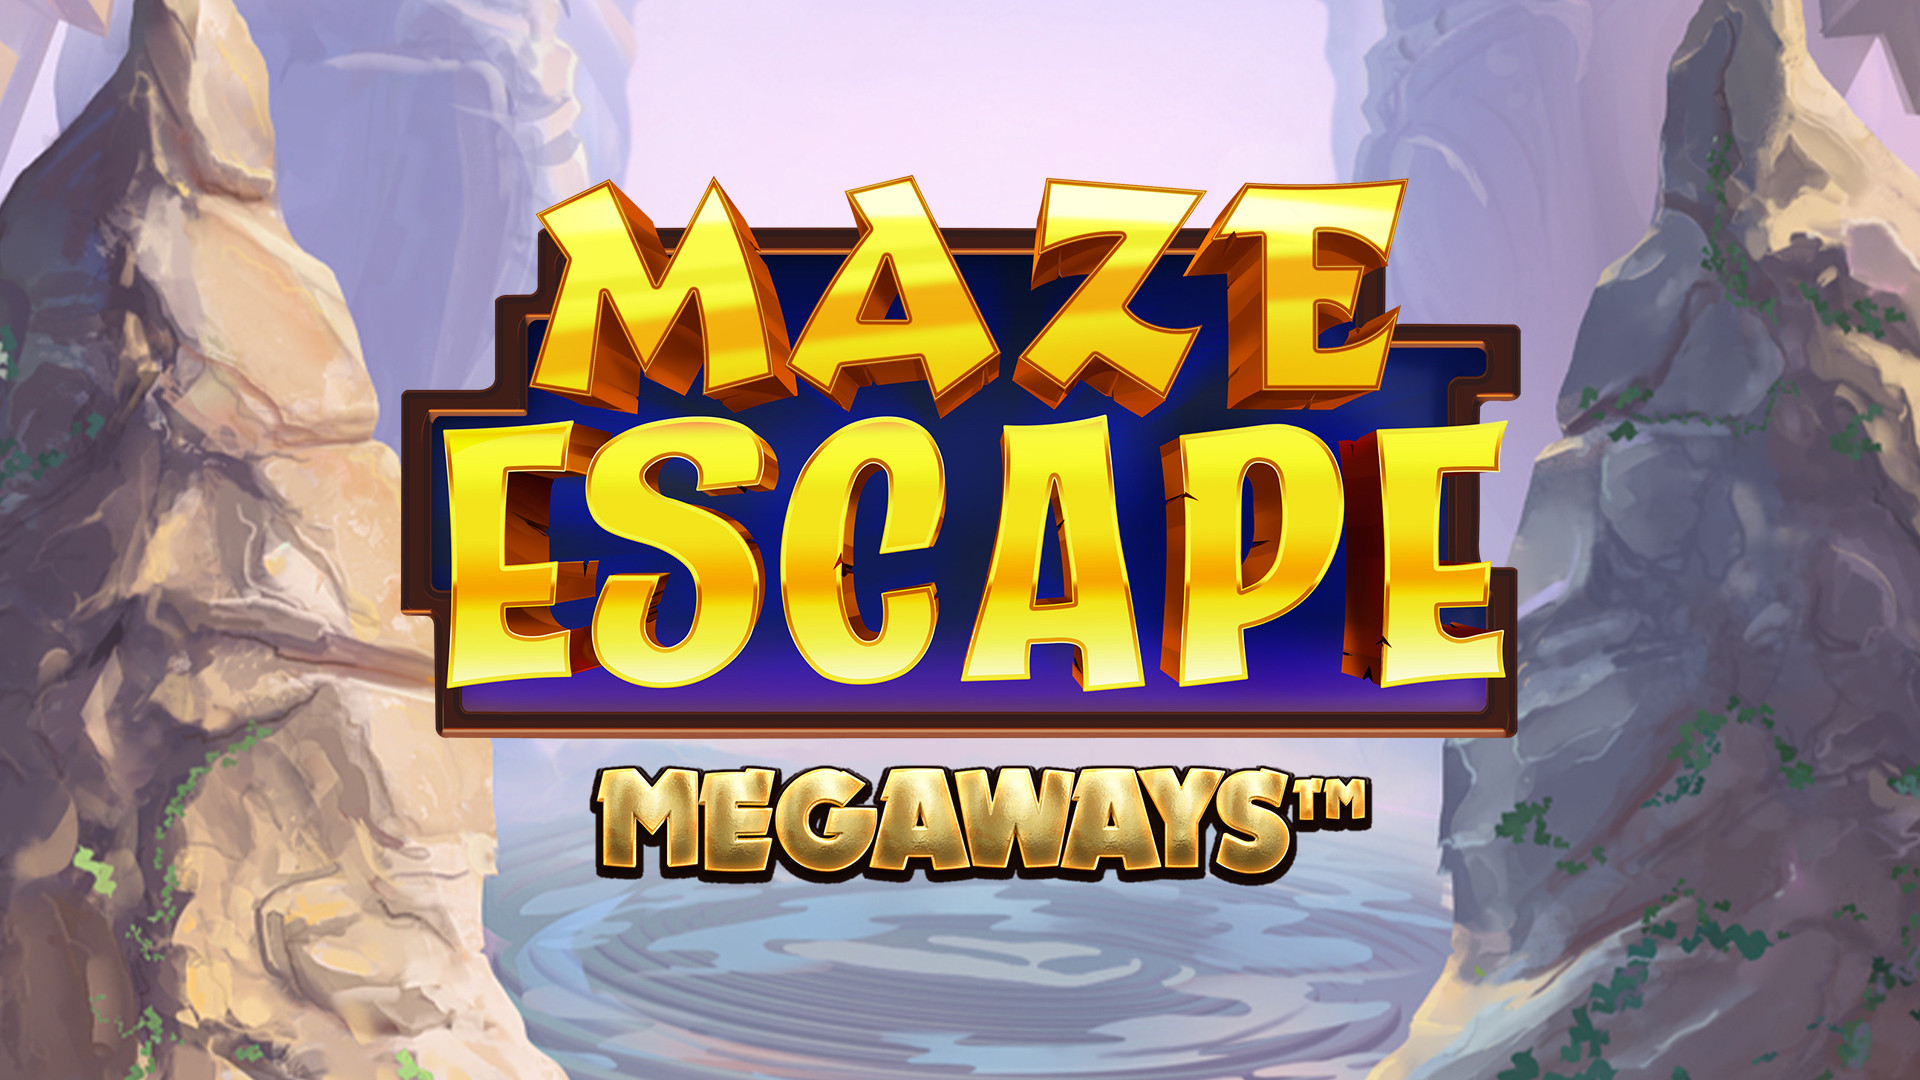 Maze Escape MEGAWAYS